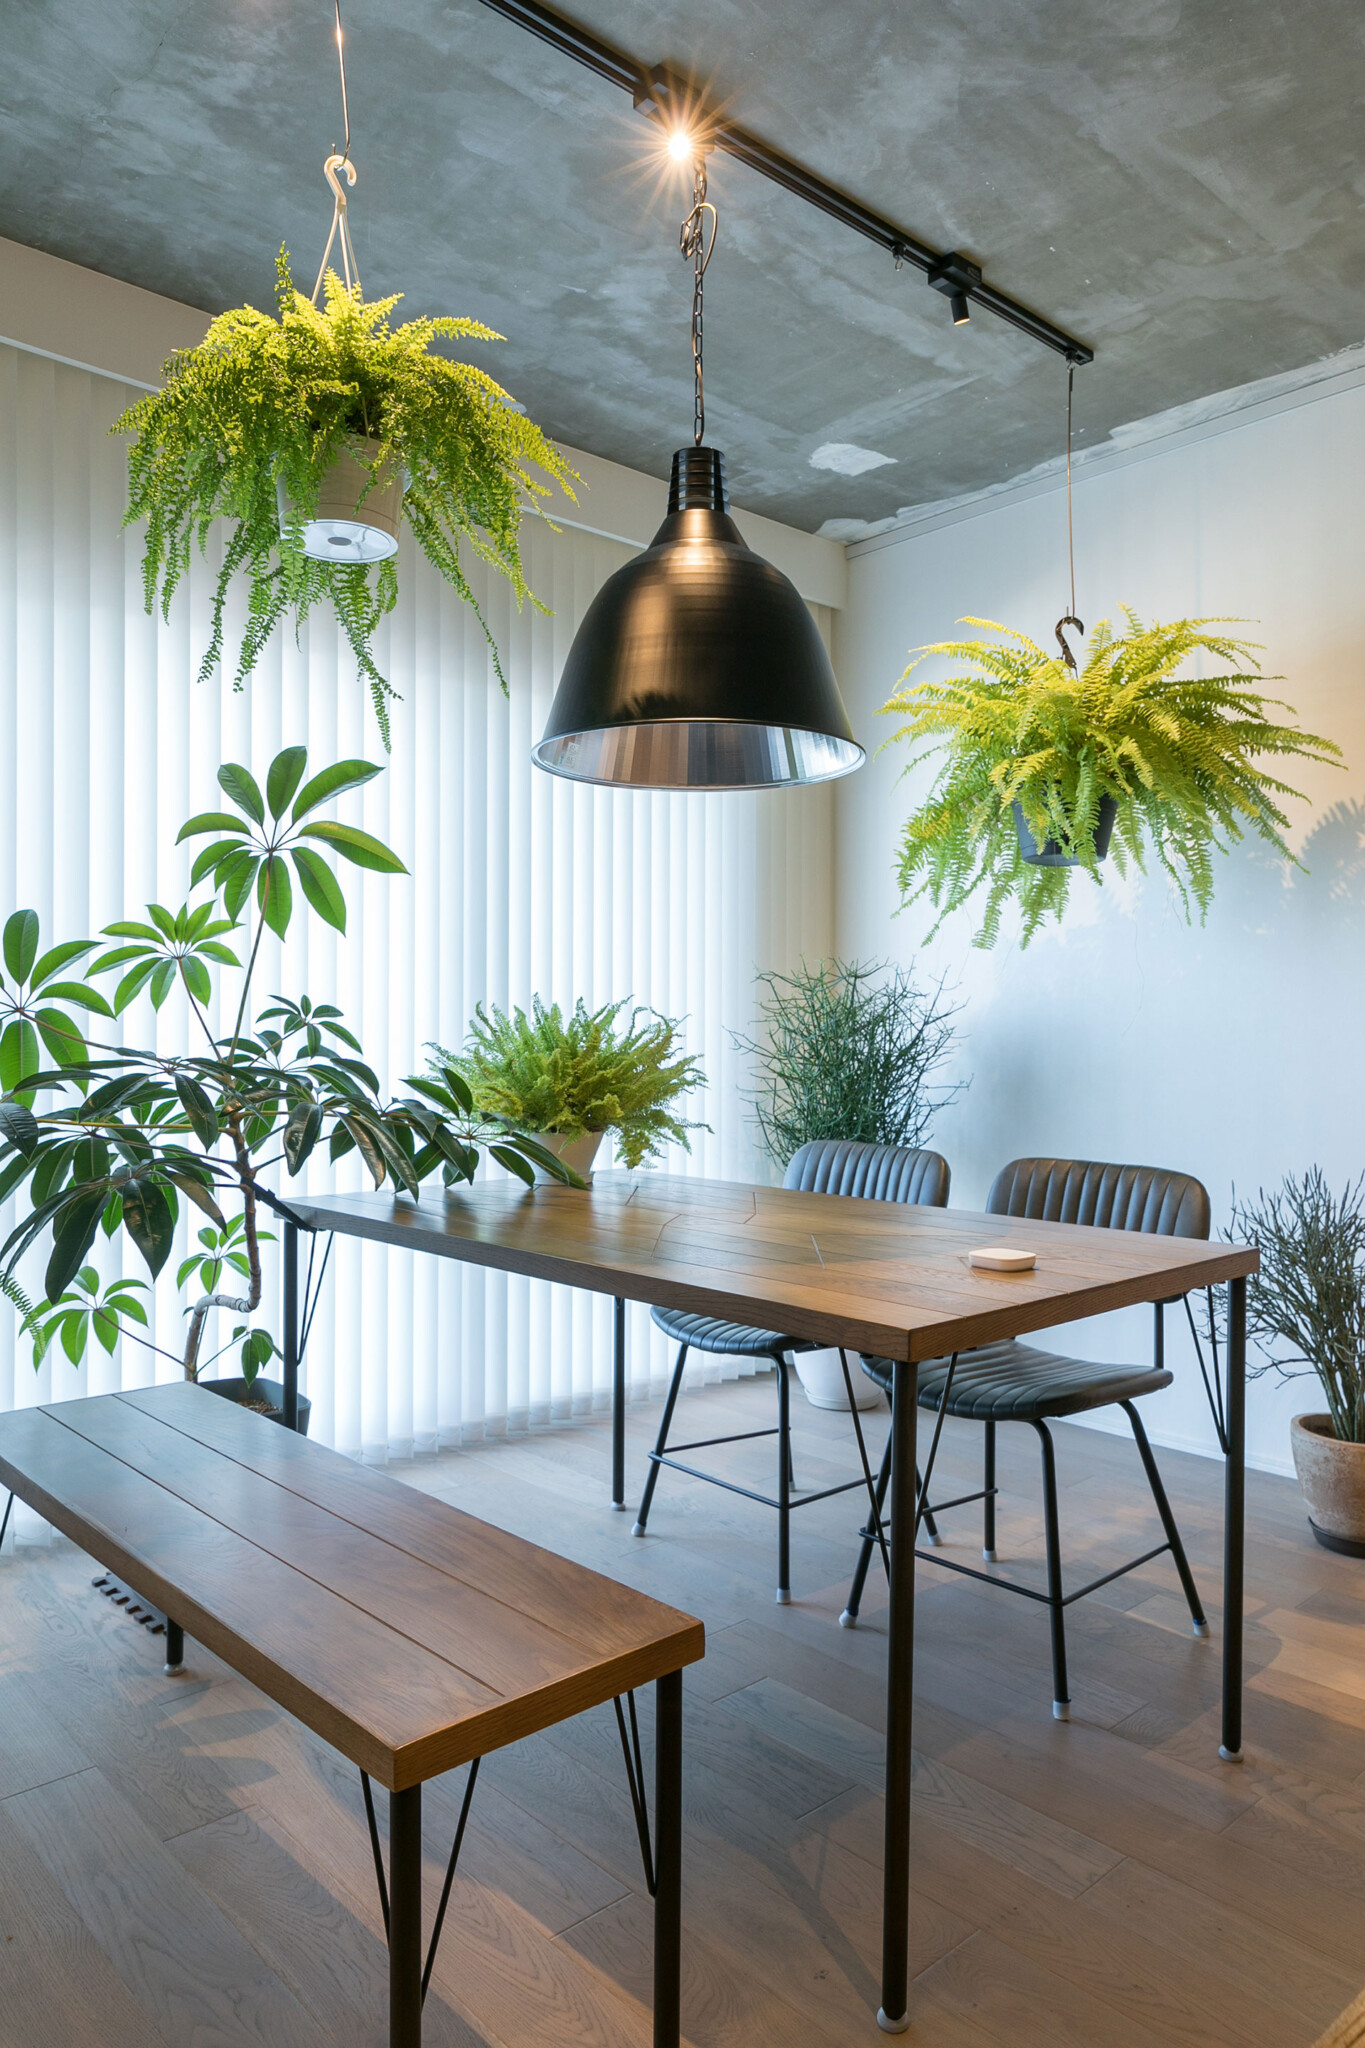 平行に2本設置された照明用のダクトレールに、高さを変えて植物を吊るすことで立体感のある空間を演出している。